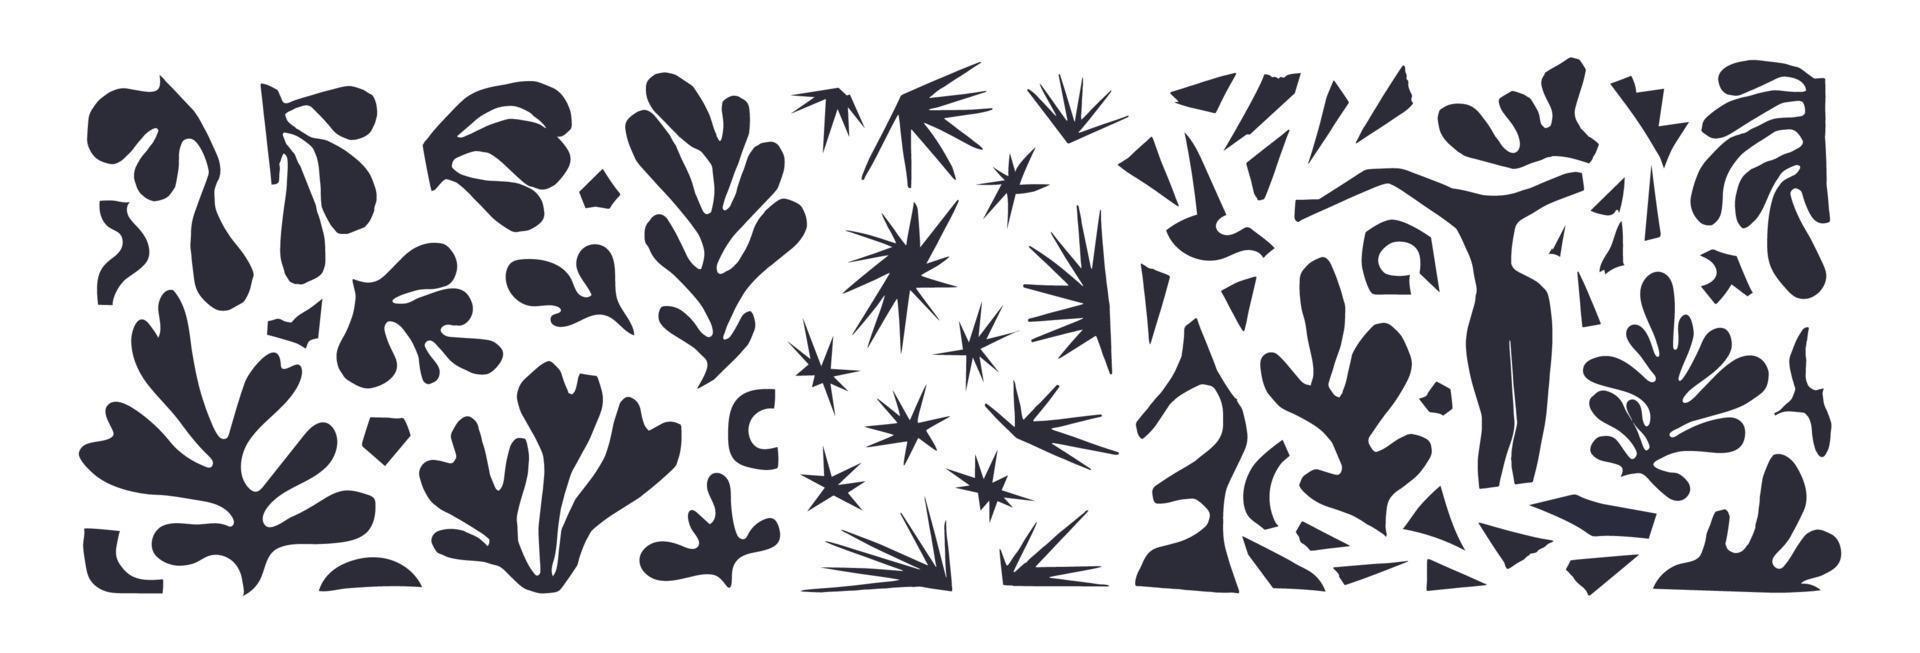 un conjunto de plantas abstractas y diferentes formas inspiradas en matisse. ilustración vectorial negro sobre recortes de papel blanco aislados sobre fondo azul. figura femenina, estrellas, algas, trozos de papel cortado. vector